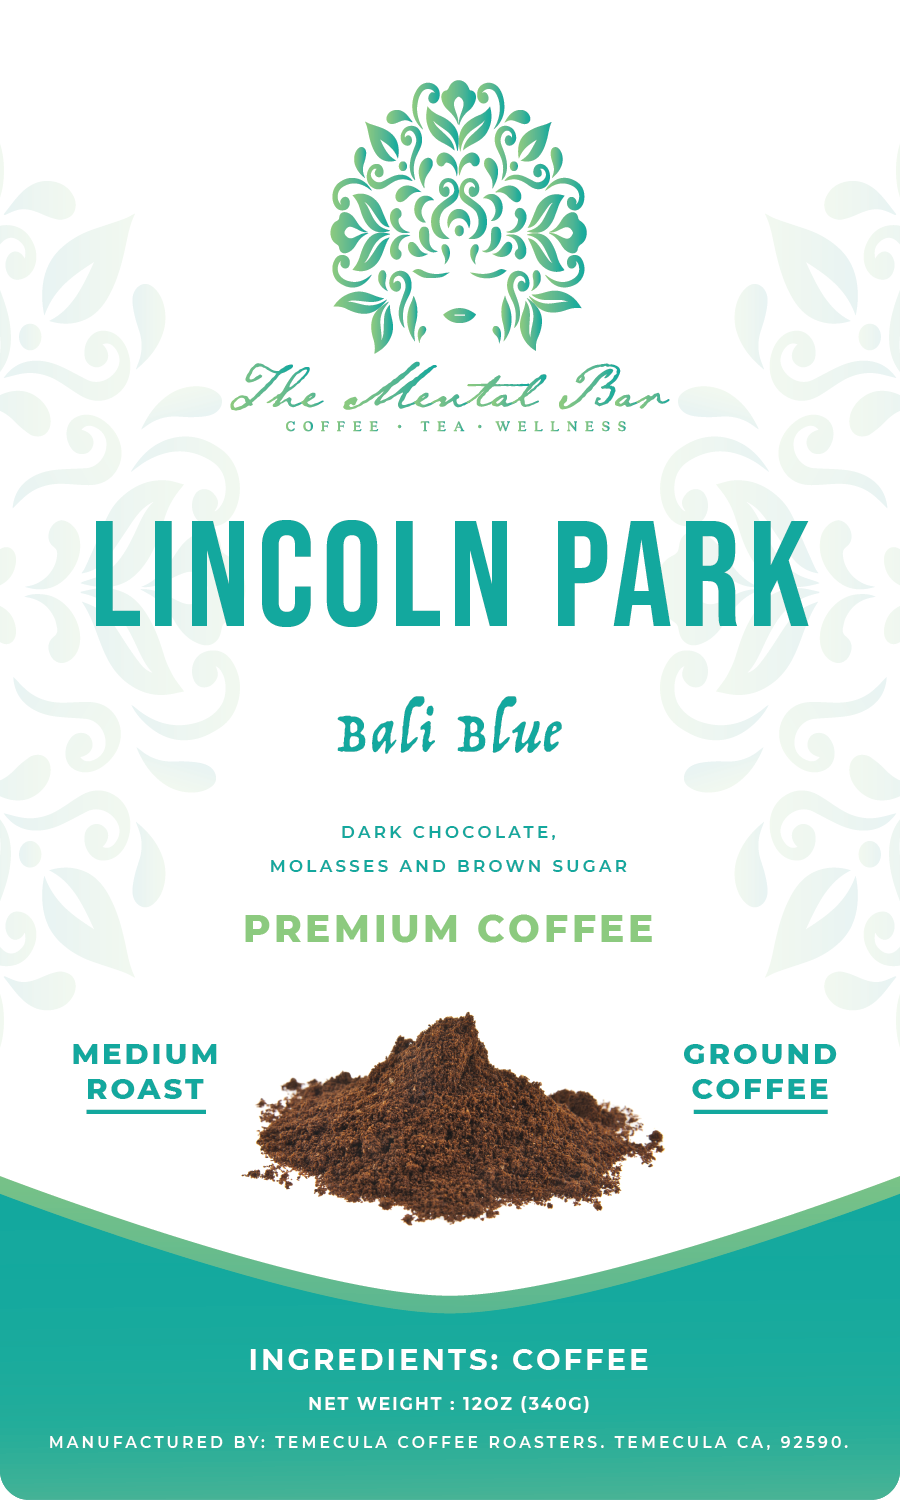 Lincoln Park (Bali Blue) - The Mental Bar